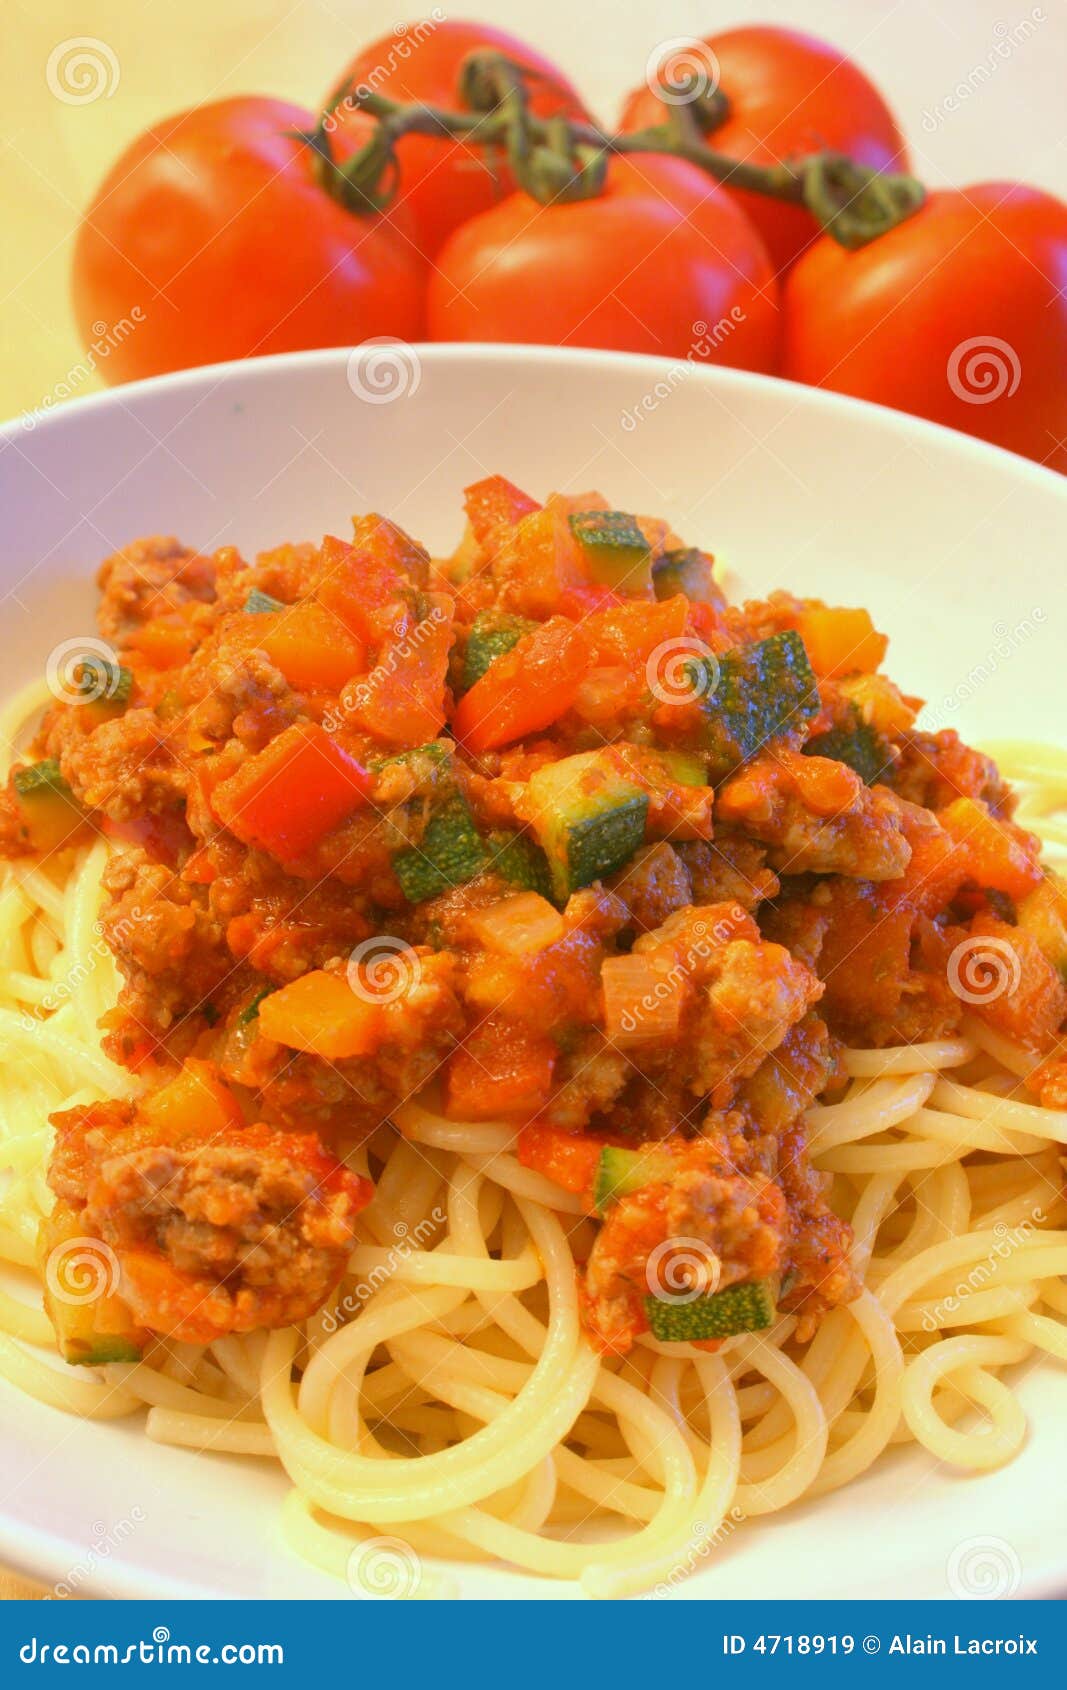 wholesome pasta dish